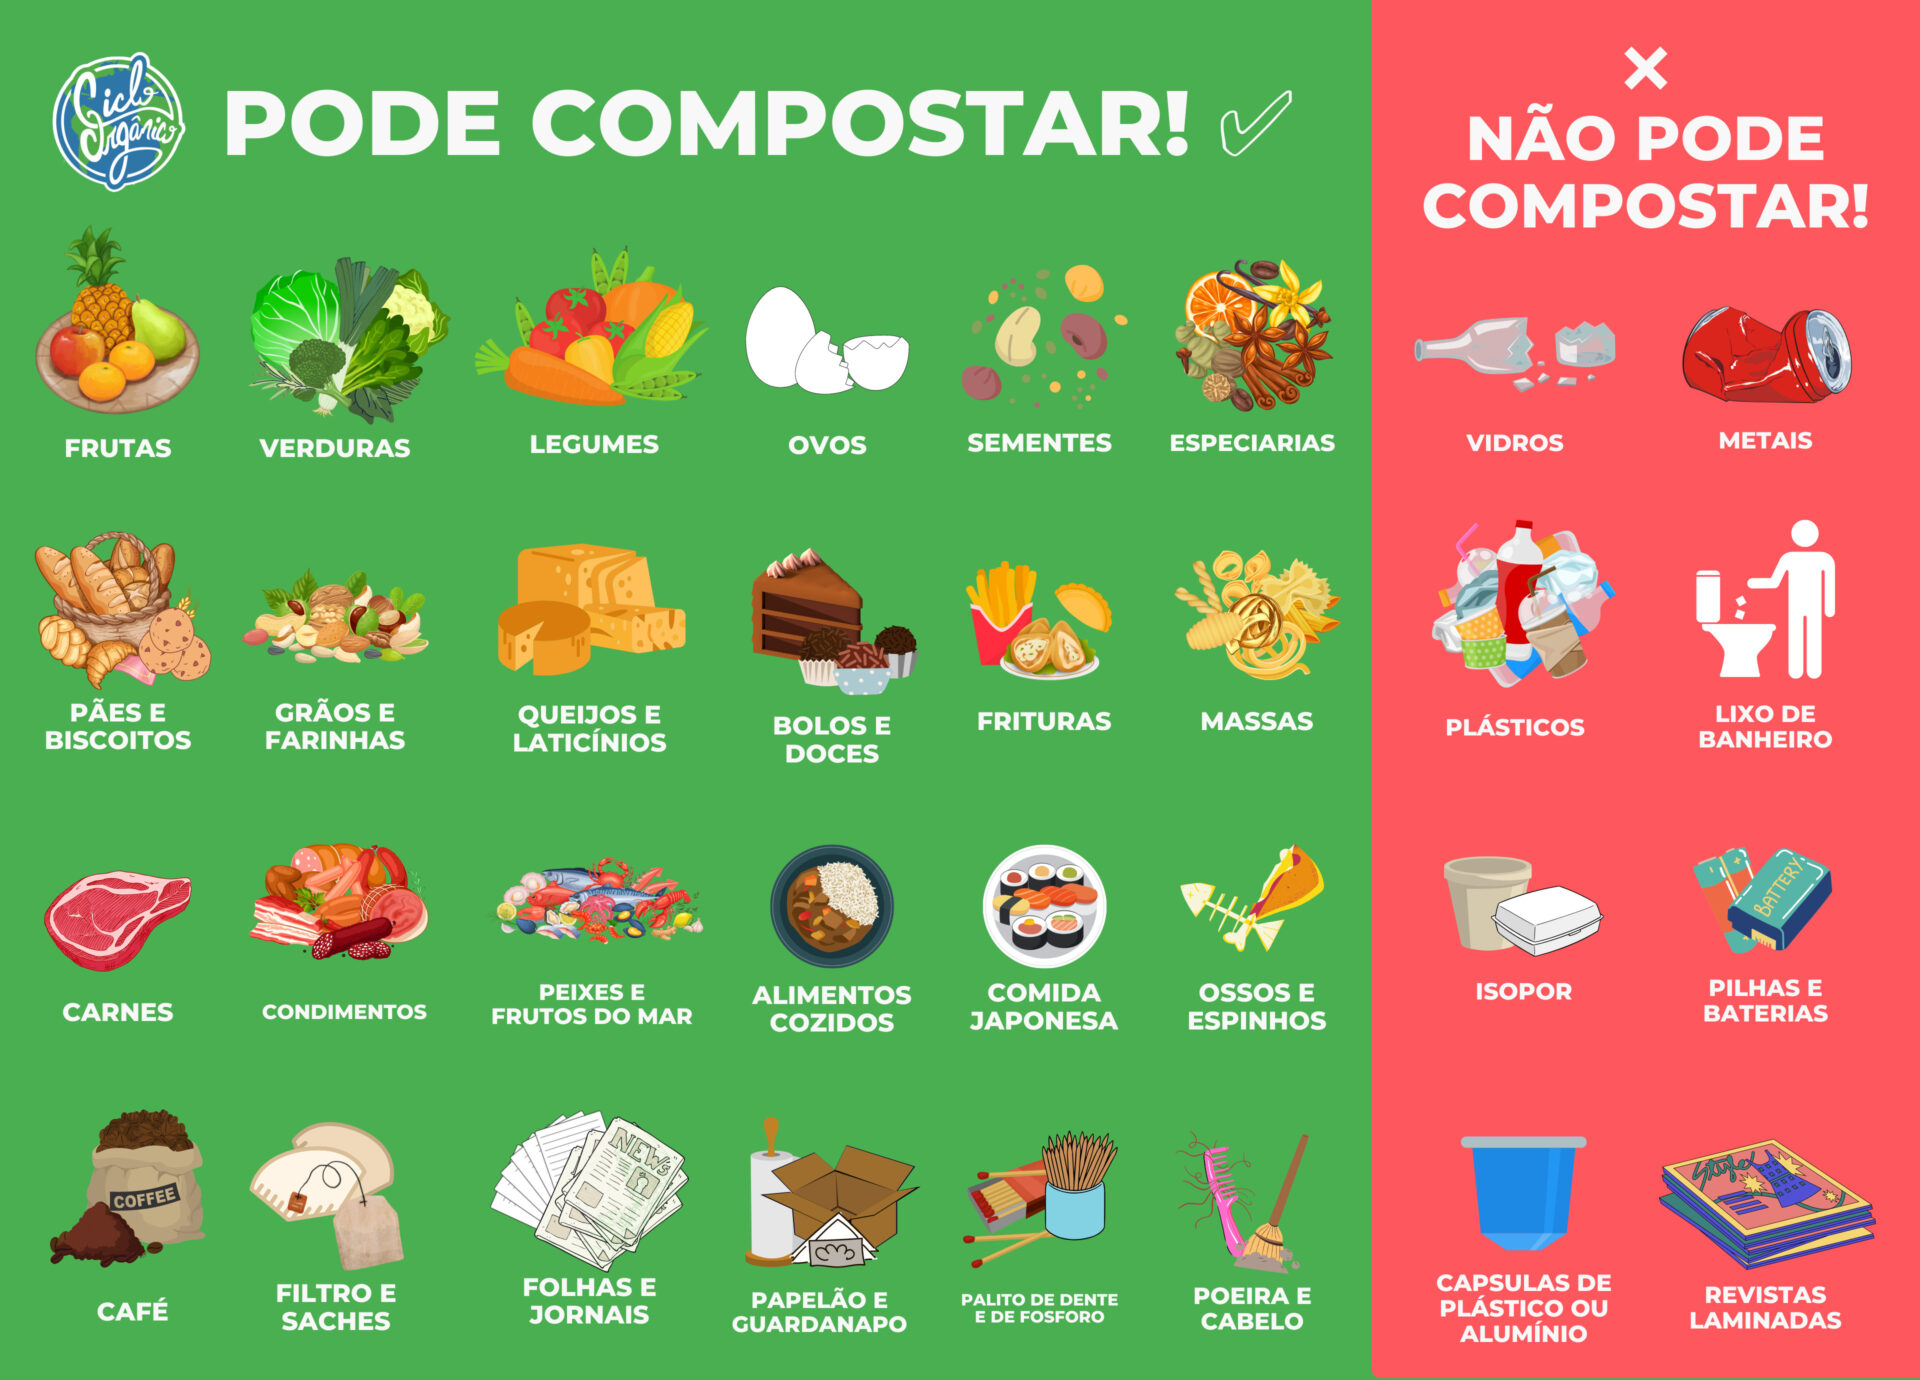 Esta imagem mostra todos os itens que podem ser compostados e que não podem ser compostados